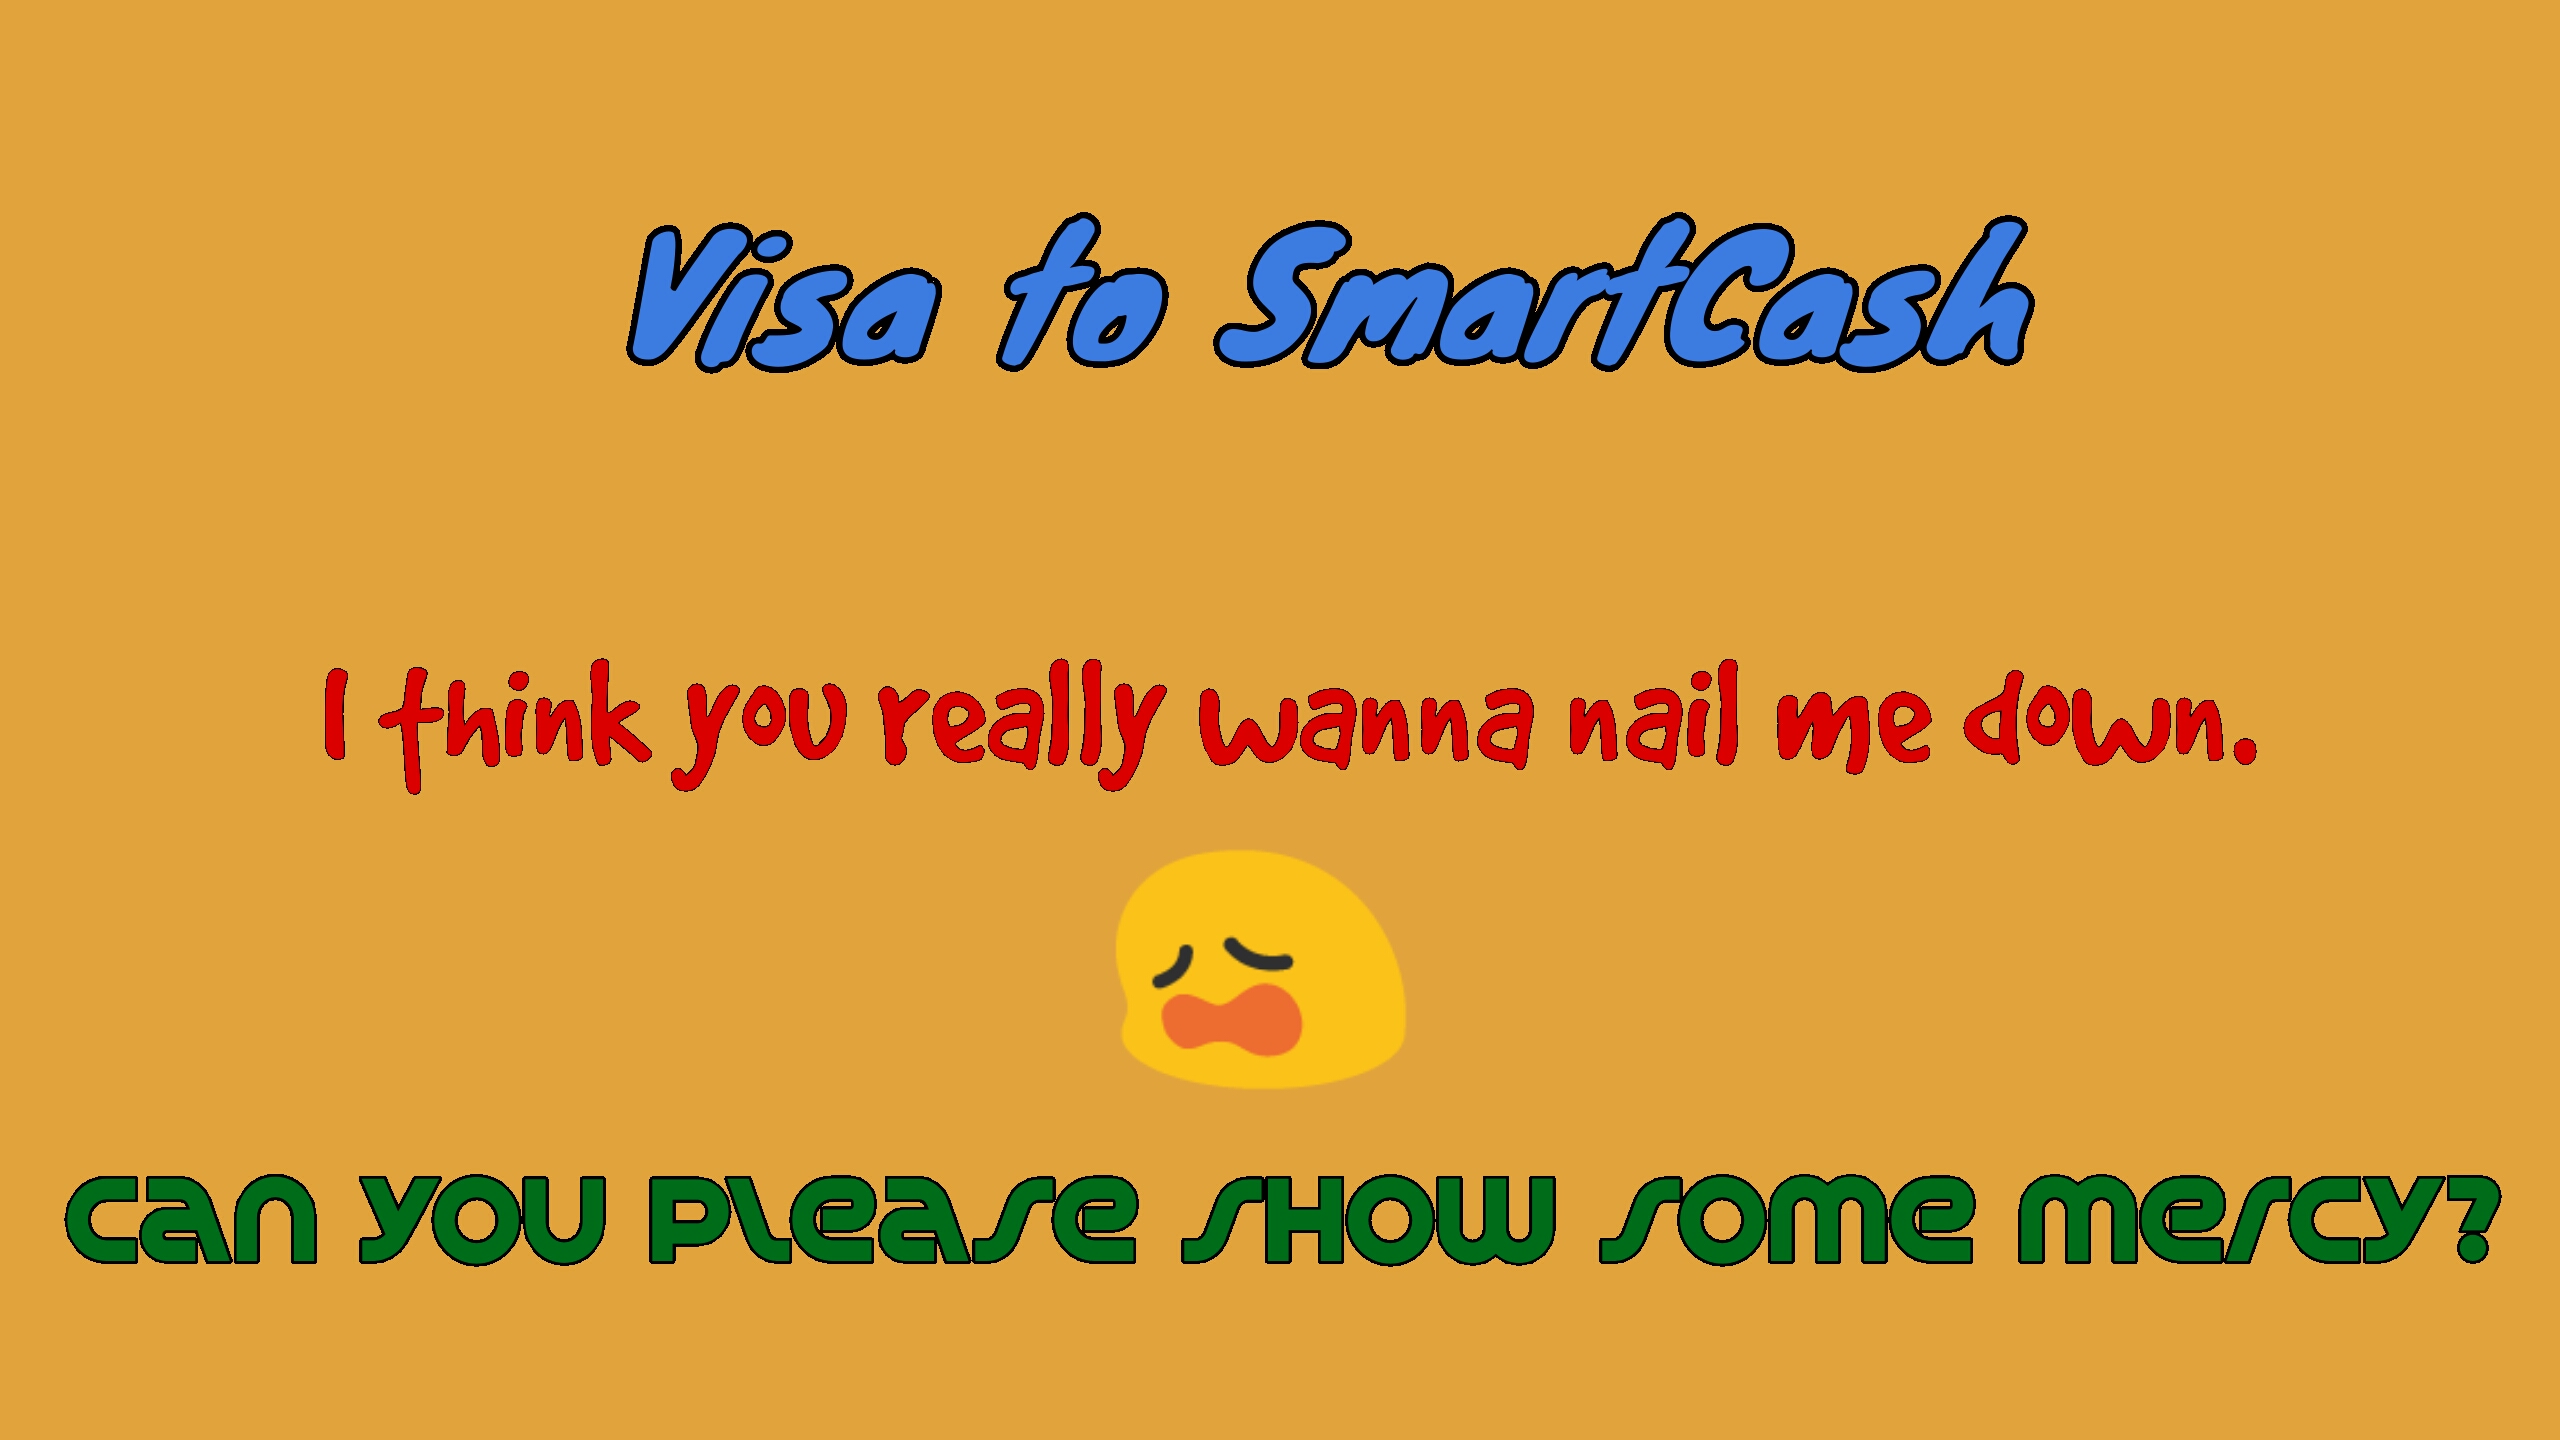 visa-smartcard_meme.jpg